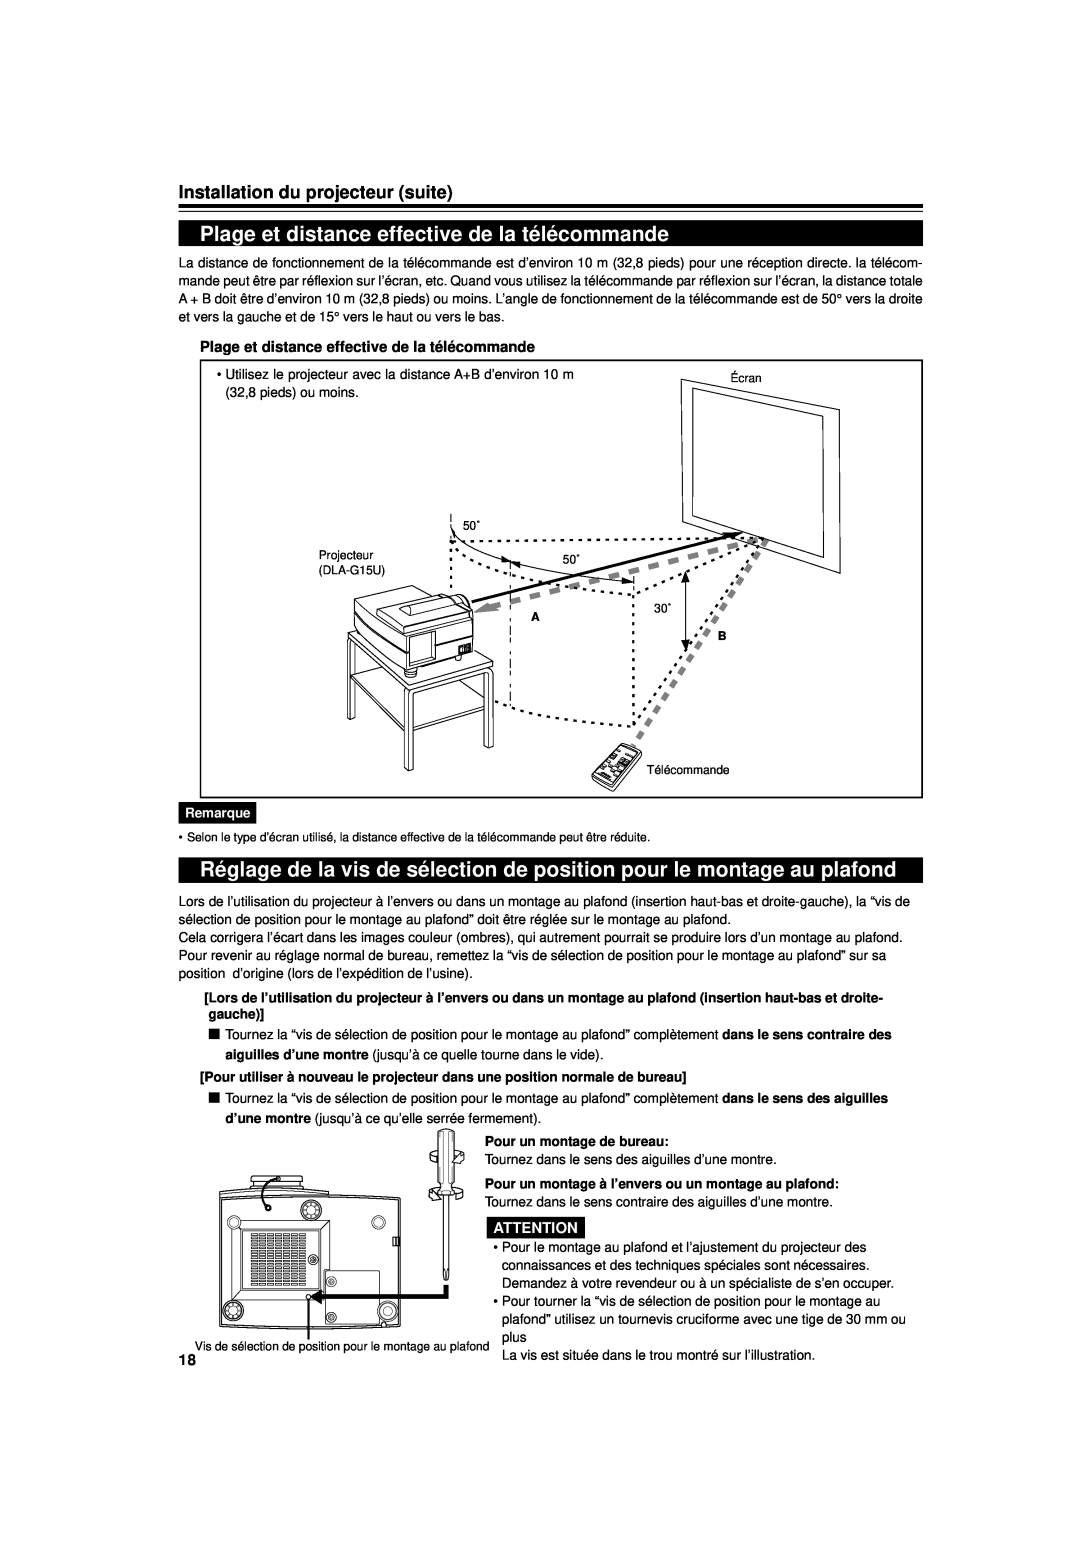 JVC DLA-G15U manual Plage et distance effective de la télécommande, Installation du projecteur suite, Remarque 